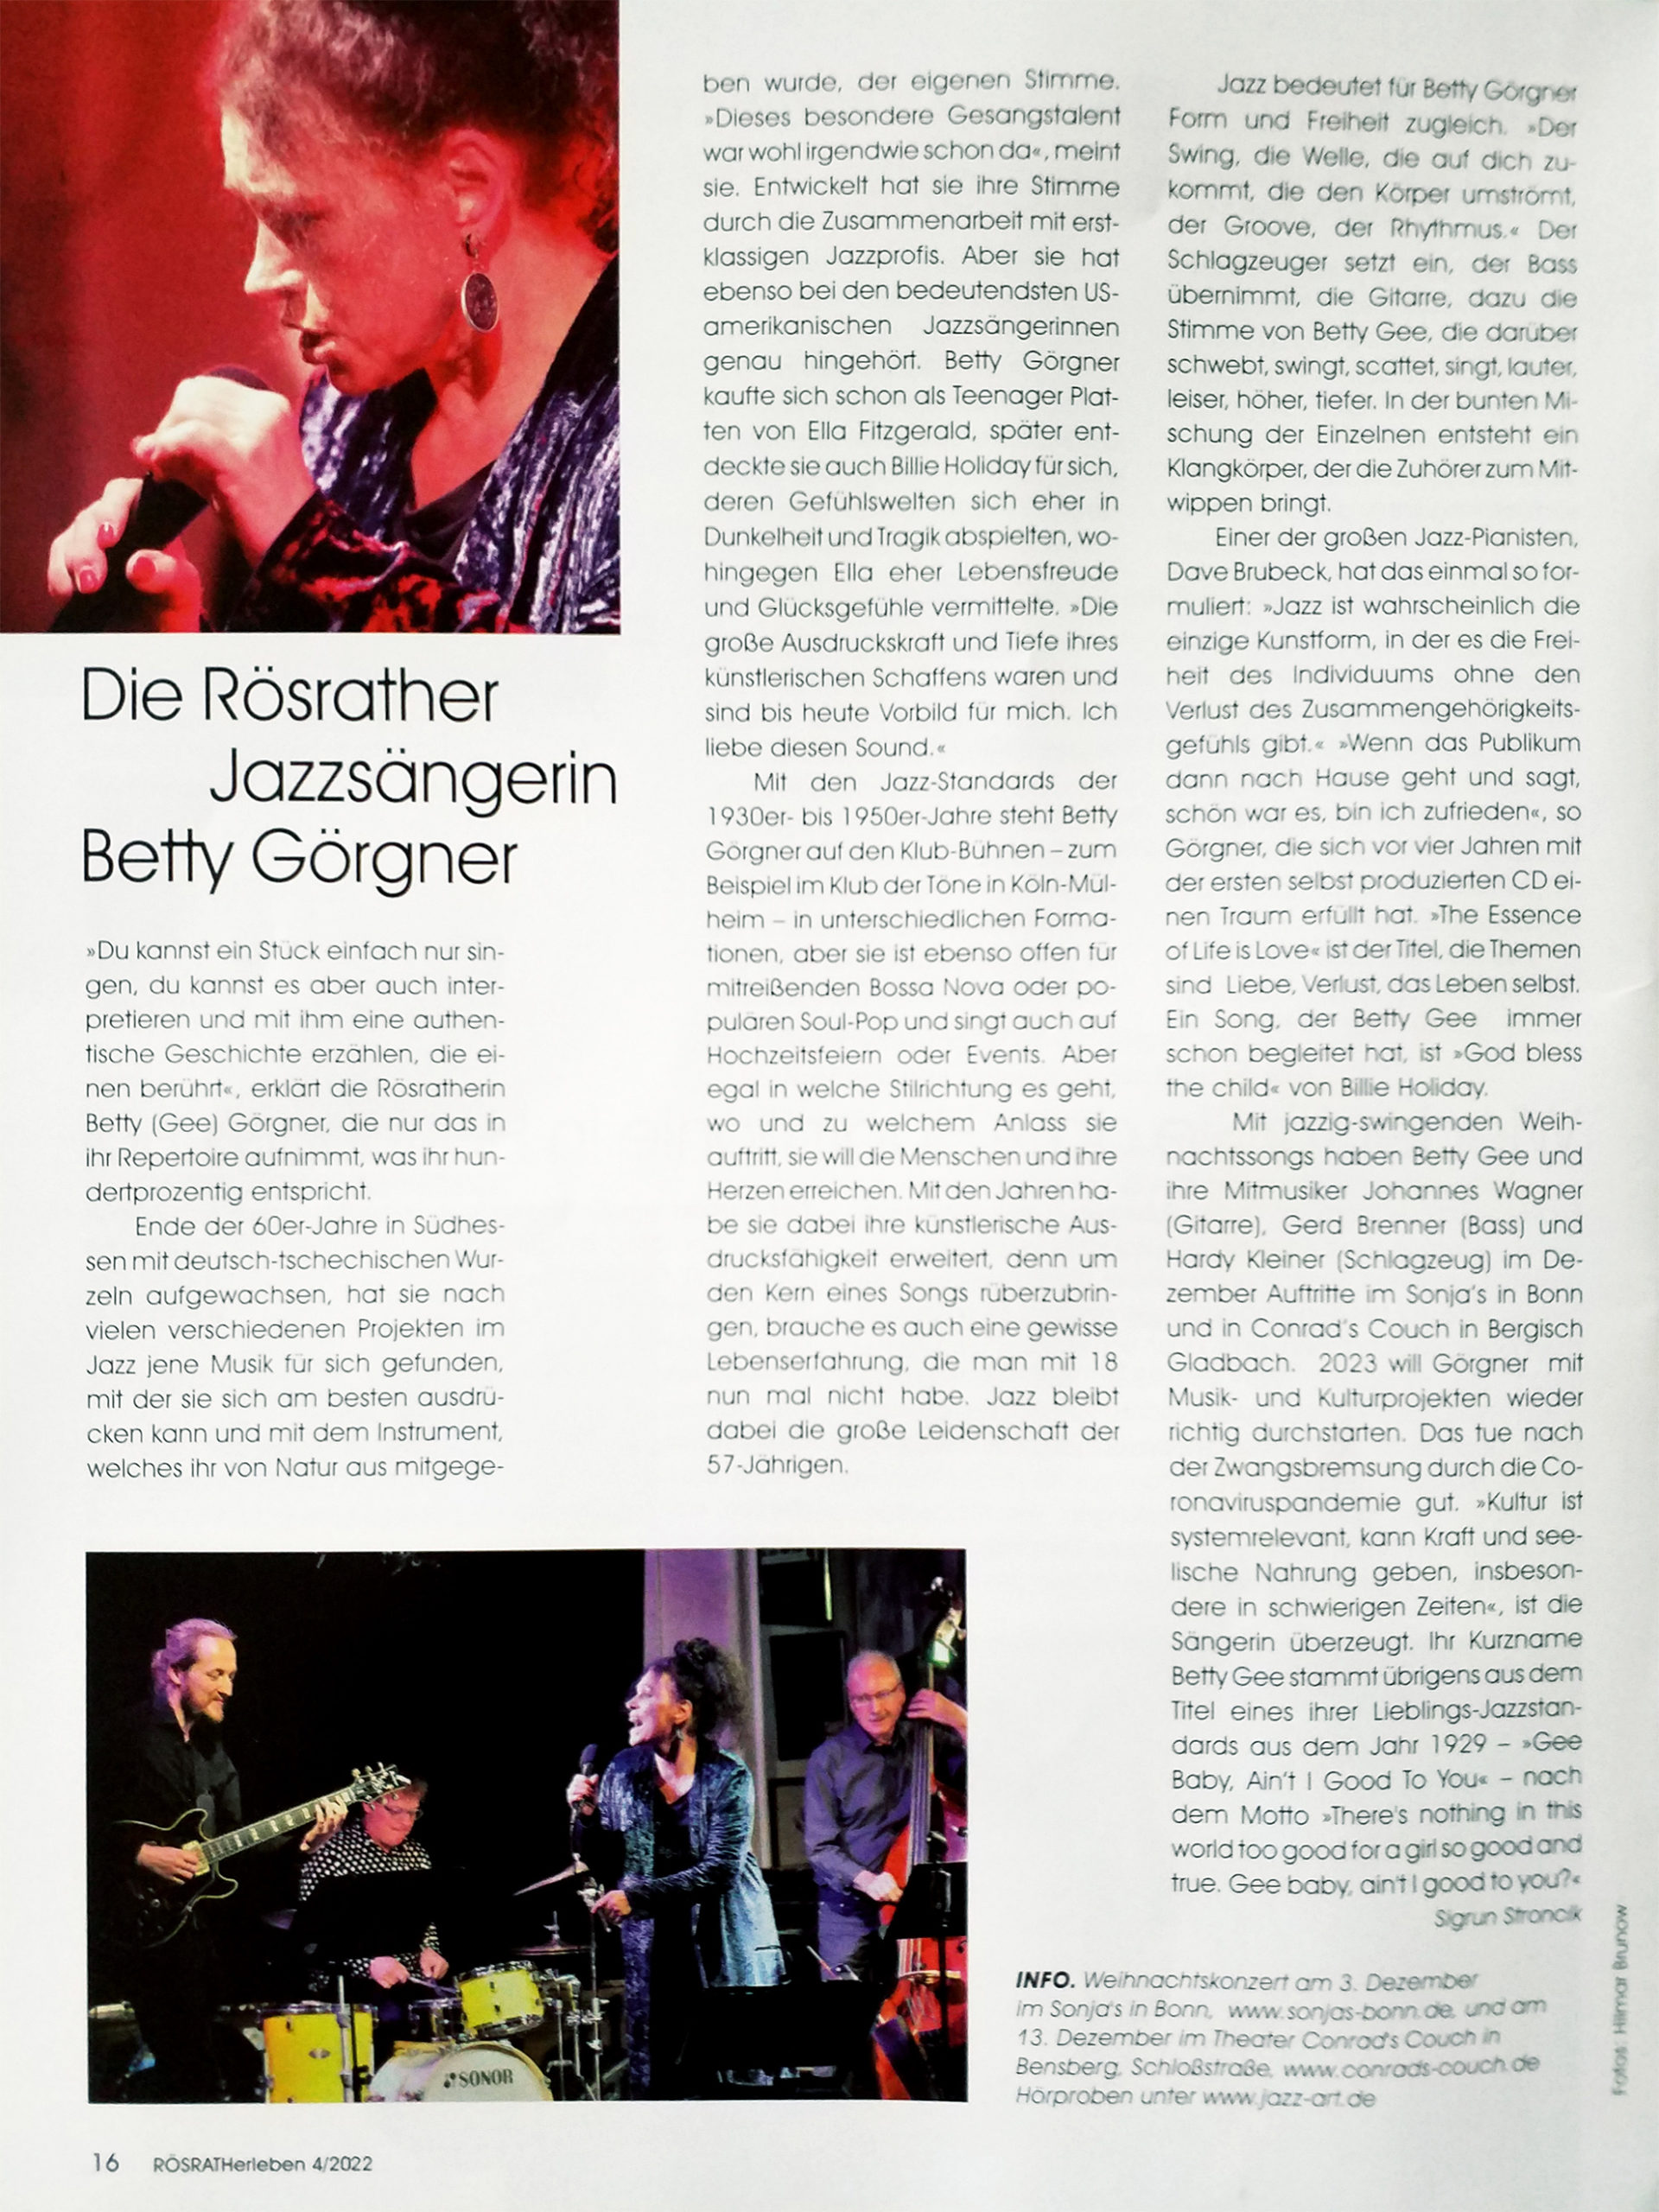 Künstlerportrait: Die Rösrather Jazzsängerin Betty Görgner